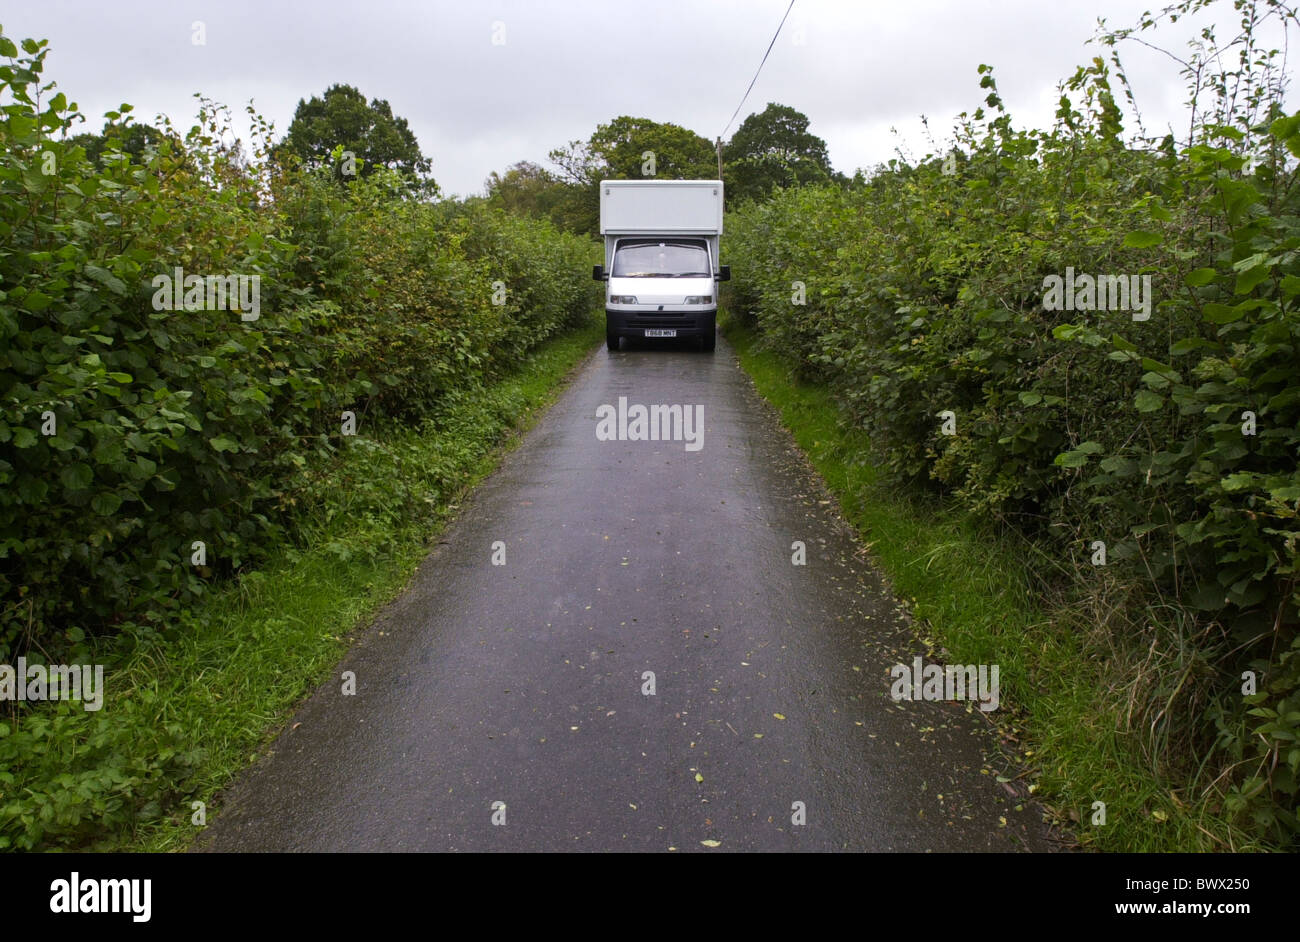 Whitebox van fahren durch schmale Landstraße in ländlichen Wales UK Stockfoto